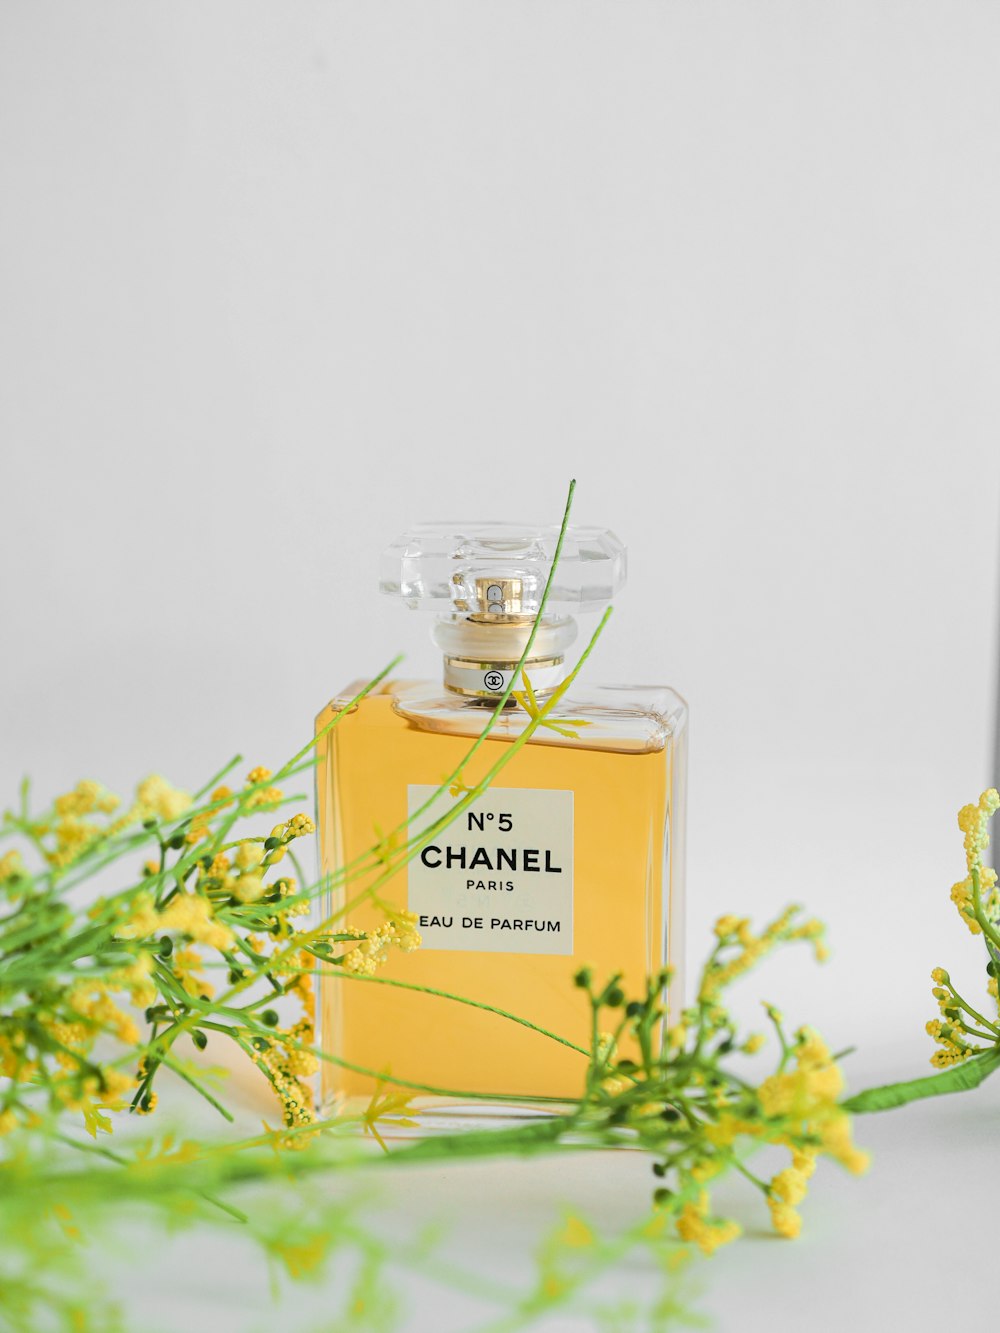 No 5 chanel perfume bottle photo – Free Paris Image on Unsplash